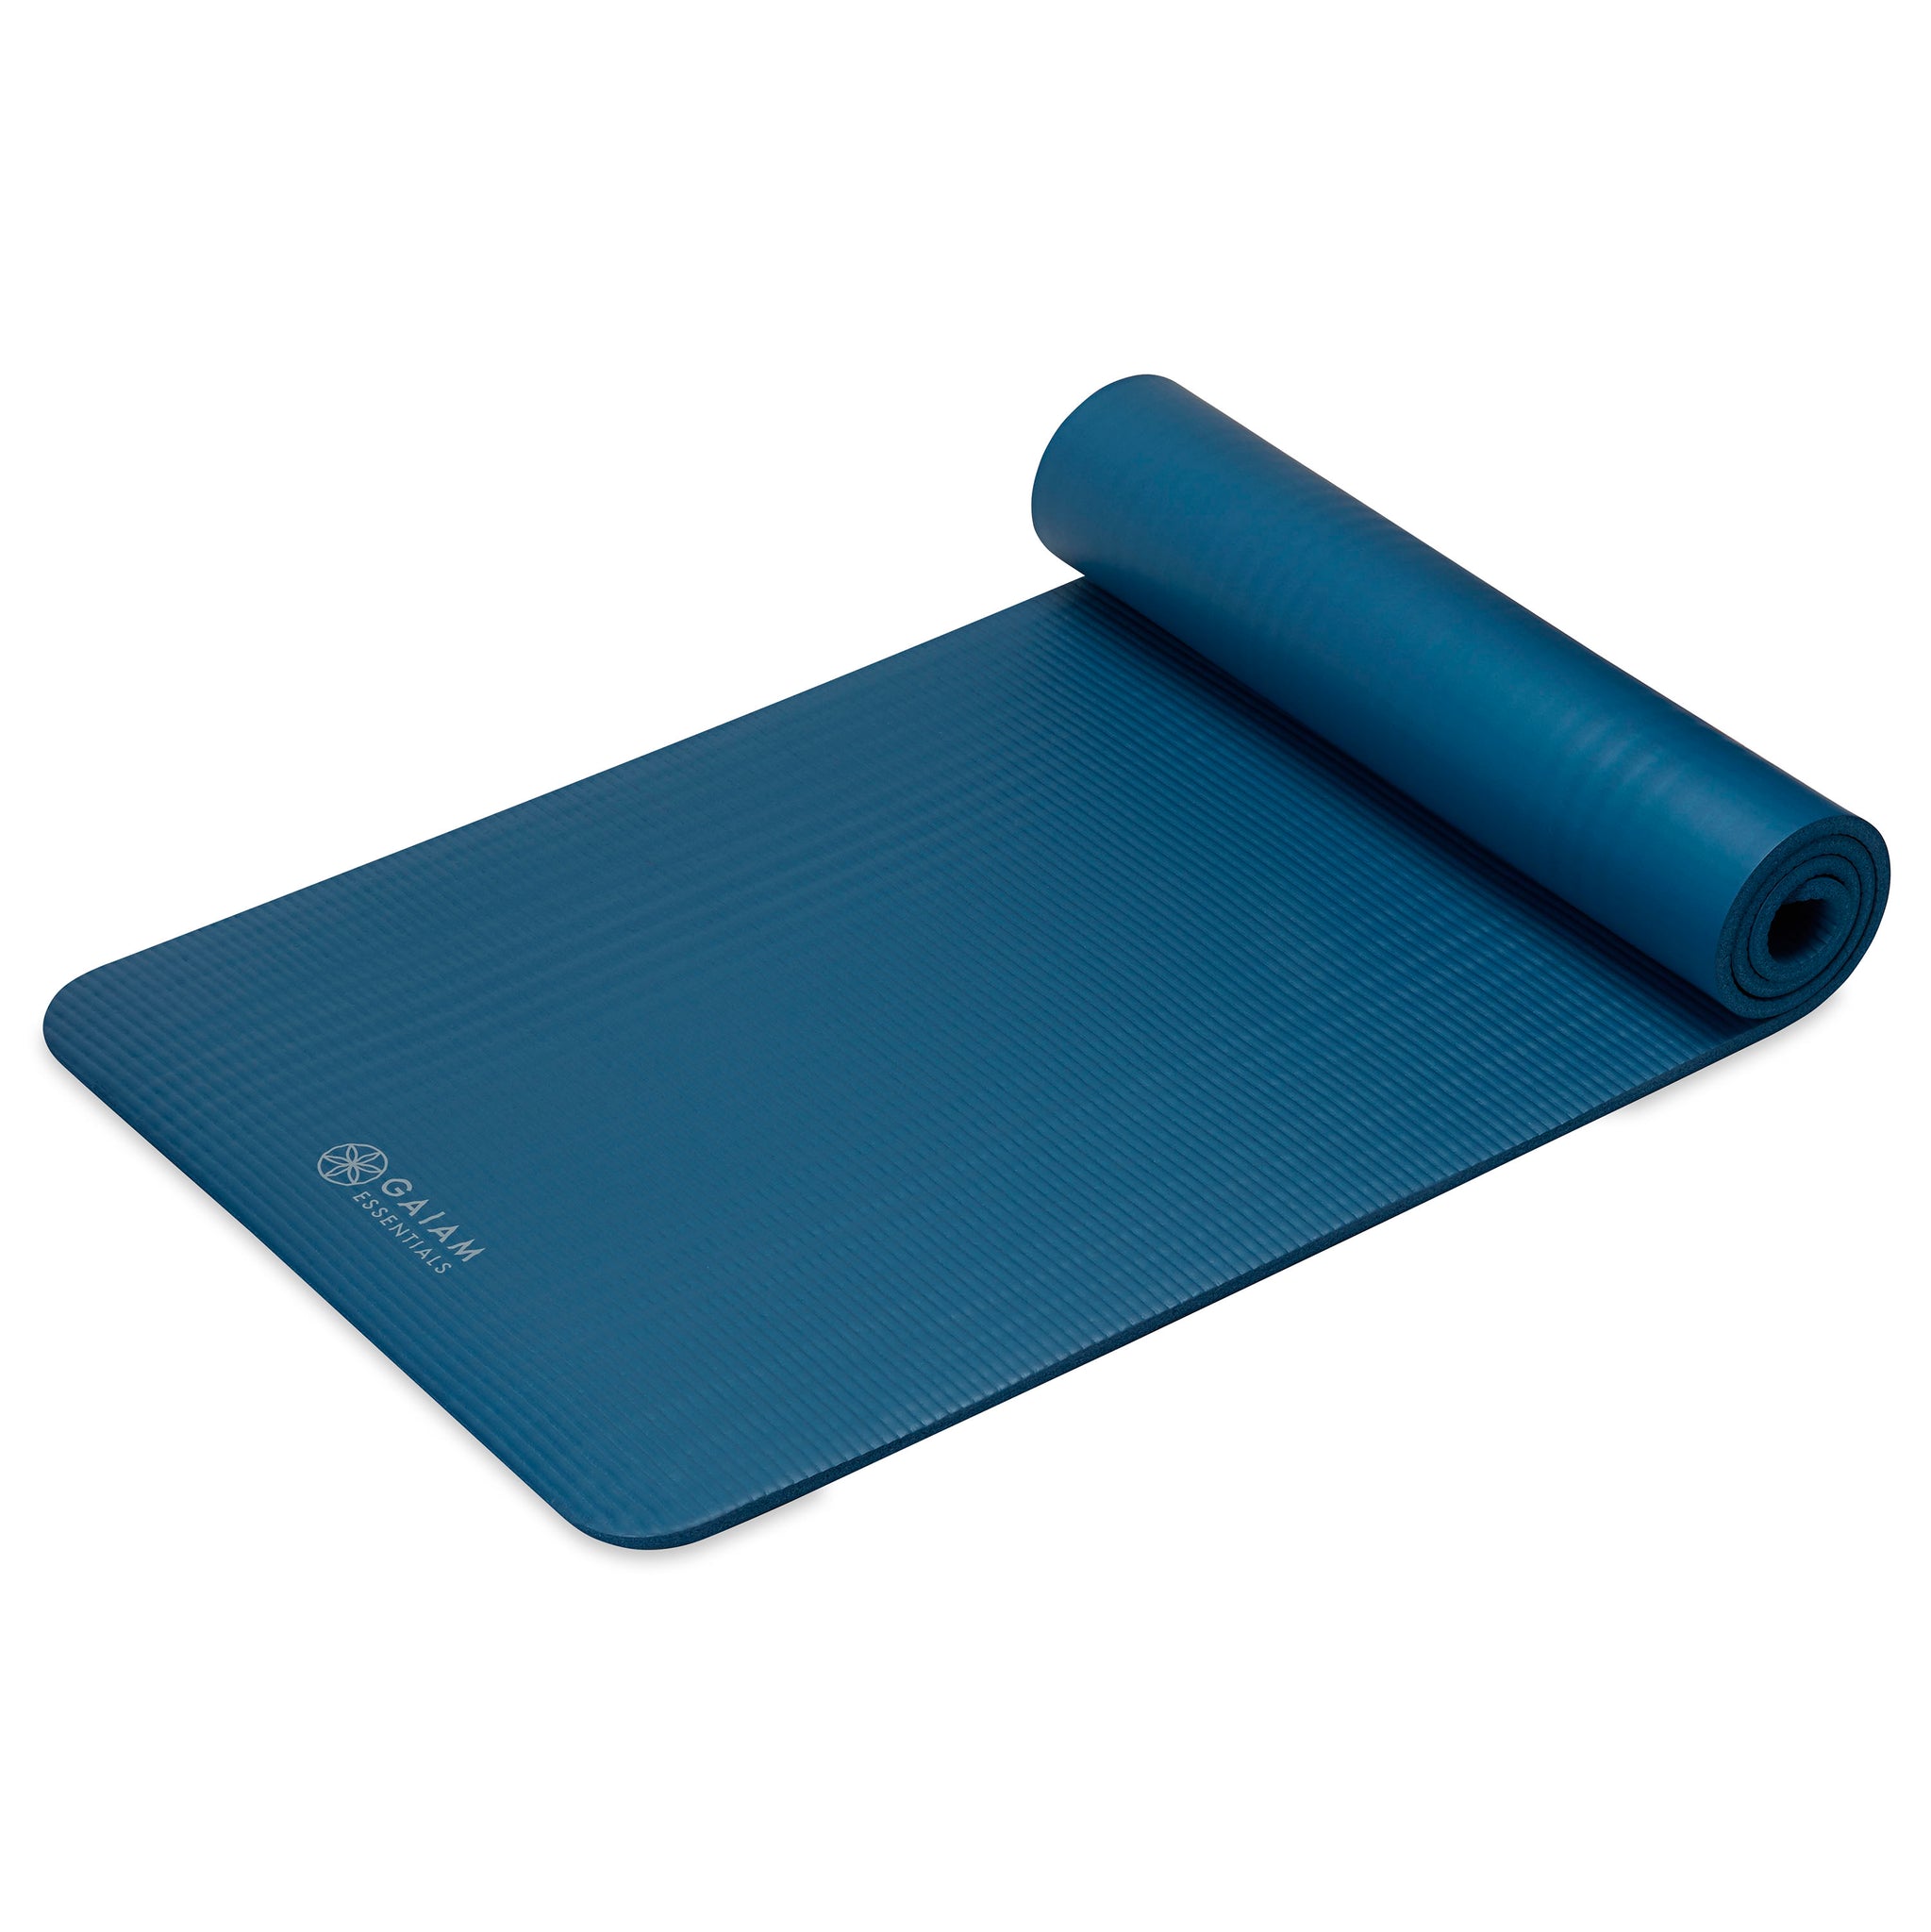 Gaiam Essentials gaiam Essentials Premium Yoga Mat With carrier